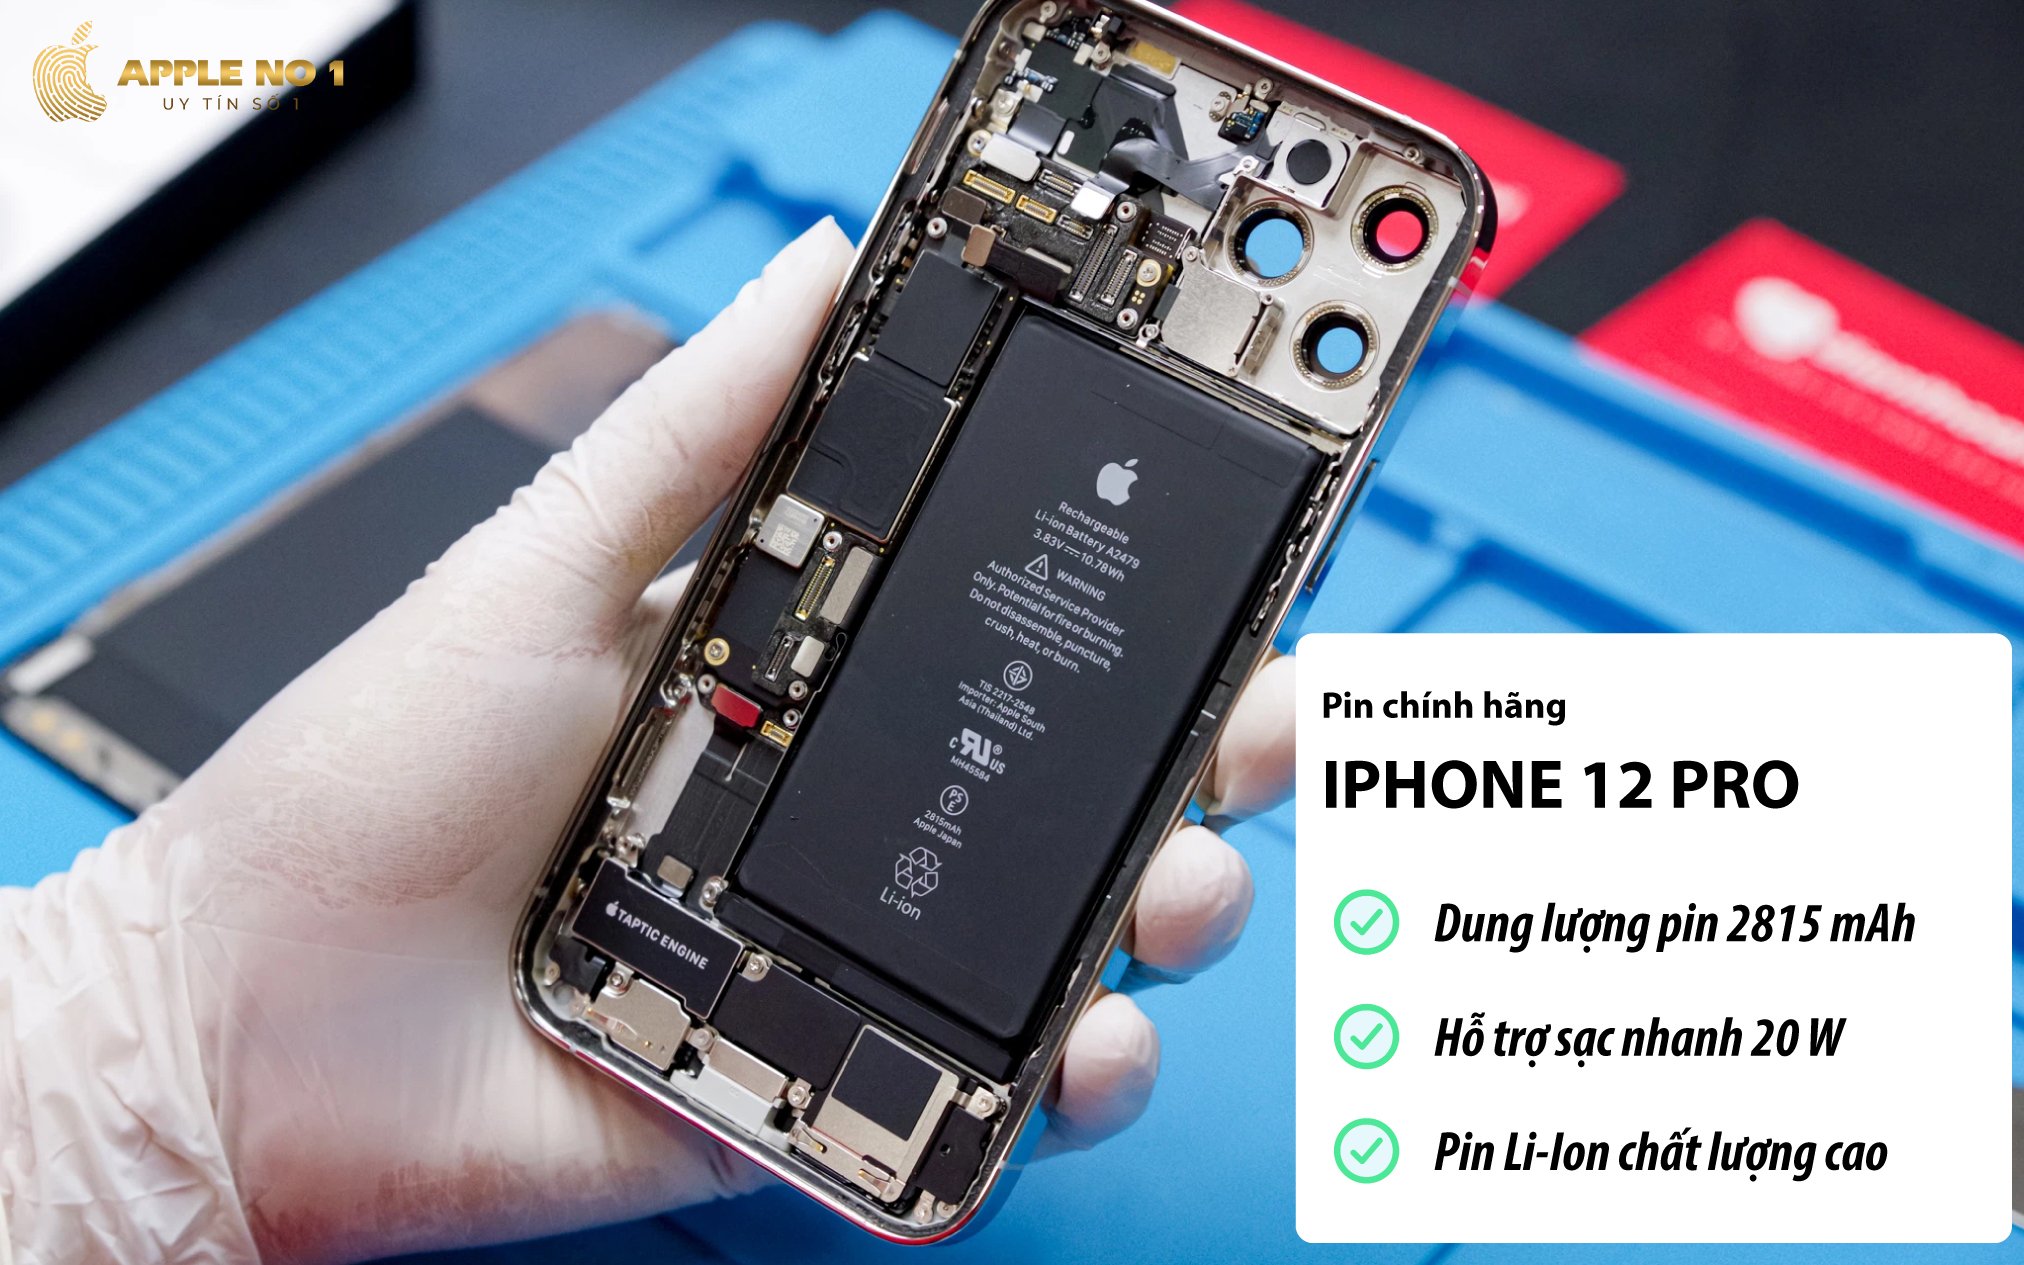 iPhone 12 Pro sở hữu viên pin 2815 mAh và hỗ trợ công nghệ sạc nhanh 20W